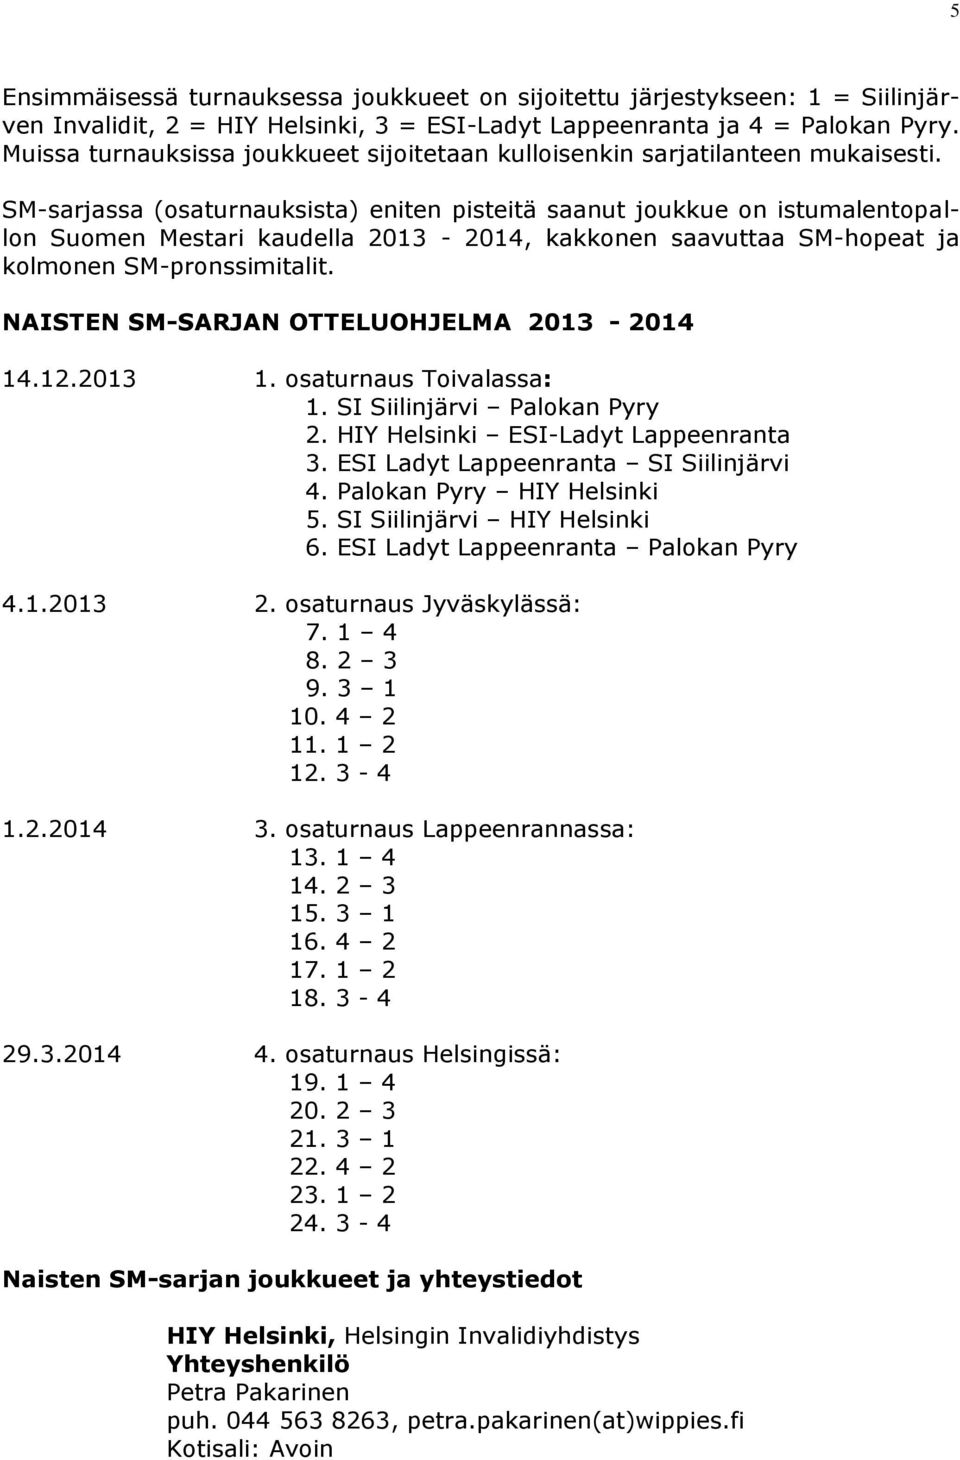 SM-sarjassa (osaturnauksista) eniten pisteitä saanut joukkue on istumalentopallon Suomen Mestari kaudella 2013-2014, kakkonen saavuttaa SM-hopeat ja kolmonen SM-pronssimitalit.